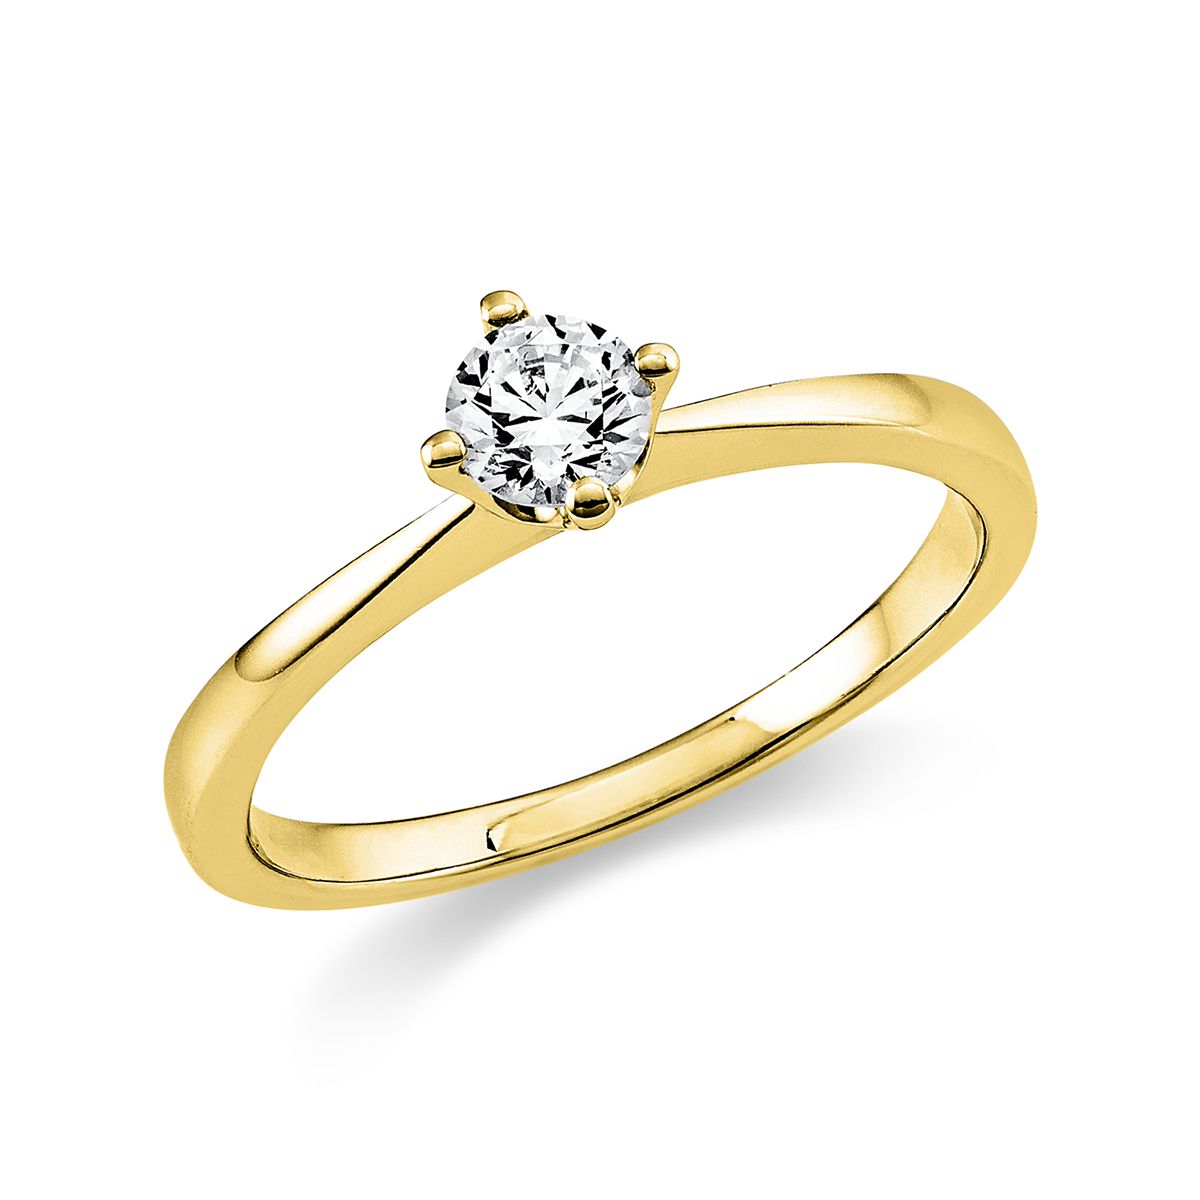 Solitär-Ring 4-Griff-Fassung 585/14K Gelbgold, Diamant 0.3 ct.